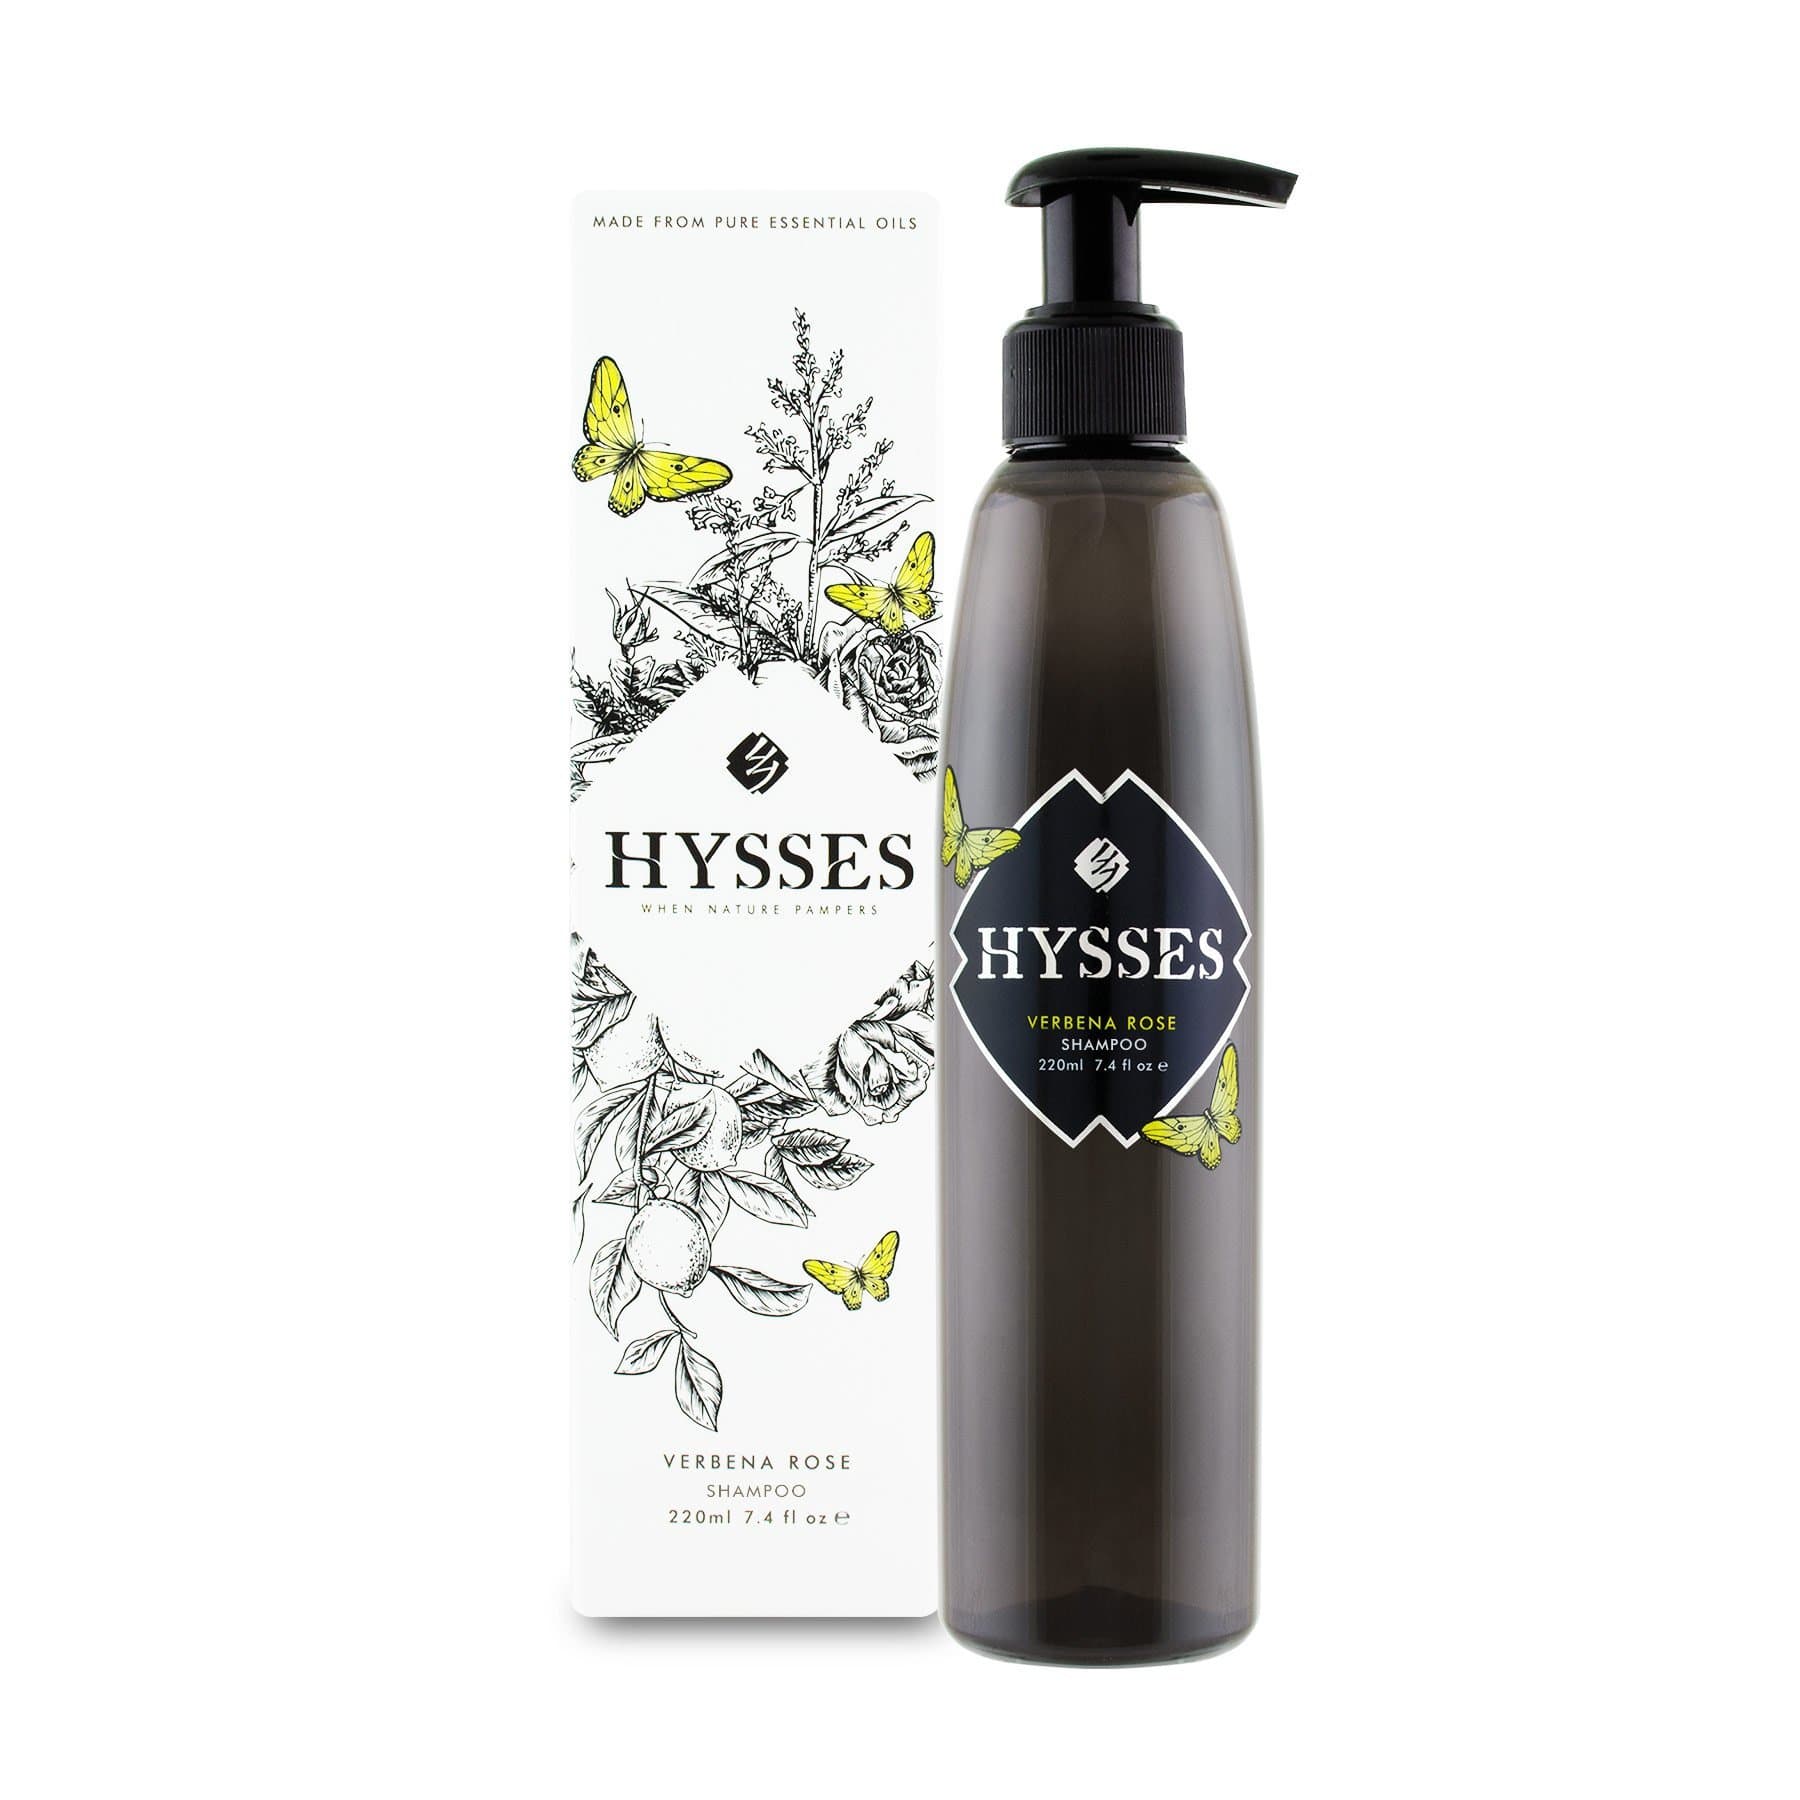 Hysses Hair Care 220ml Shampoo Verbena Rose